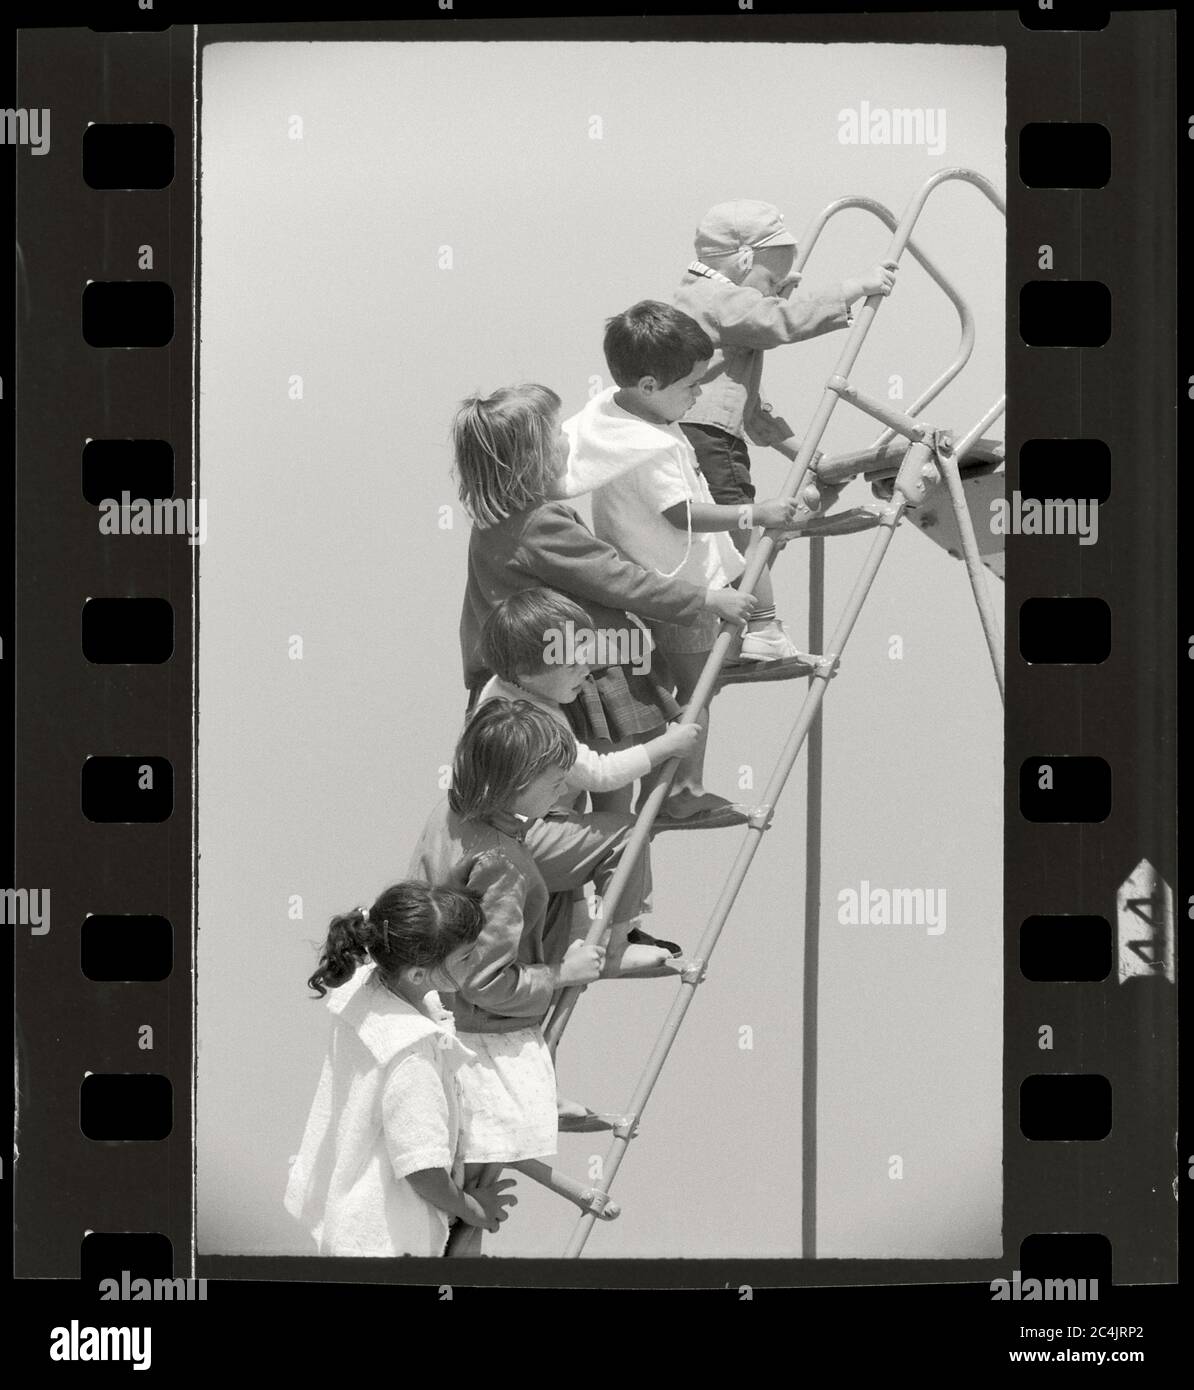 Spielplatz Kinder klettern die Treppe hinauf, um eine Rutsche nach unten zu nehmen, um 1950. Bild aus 35-mm-Negativ. Stockfoto